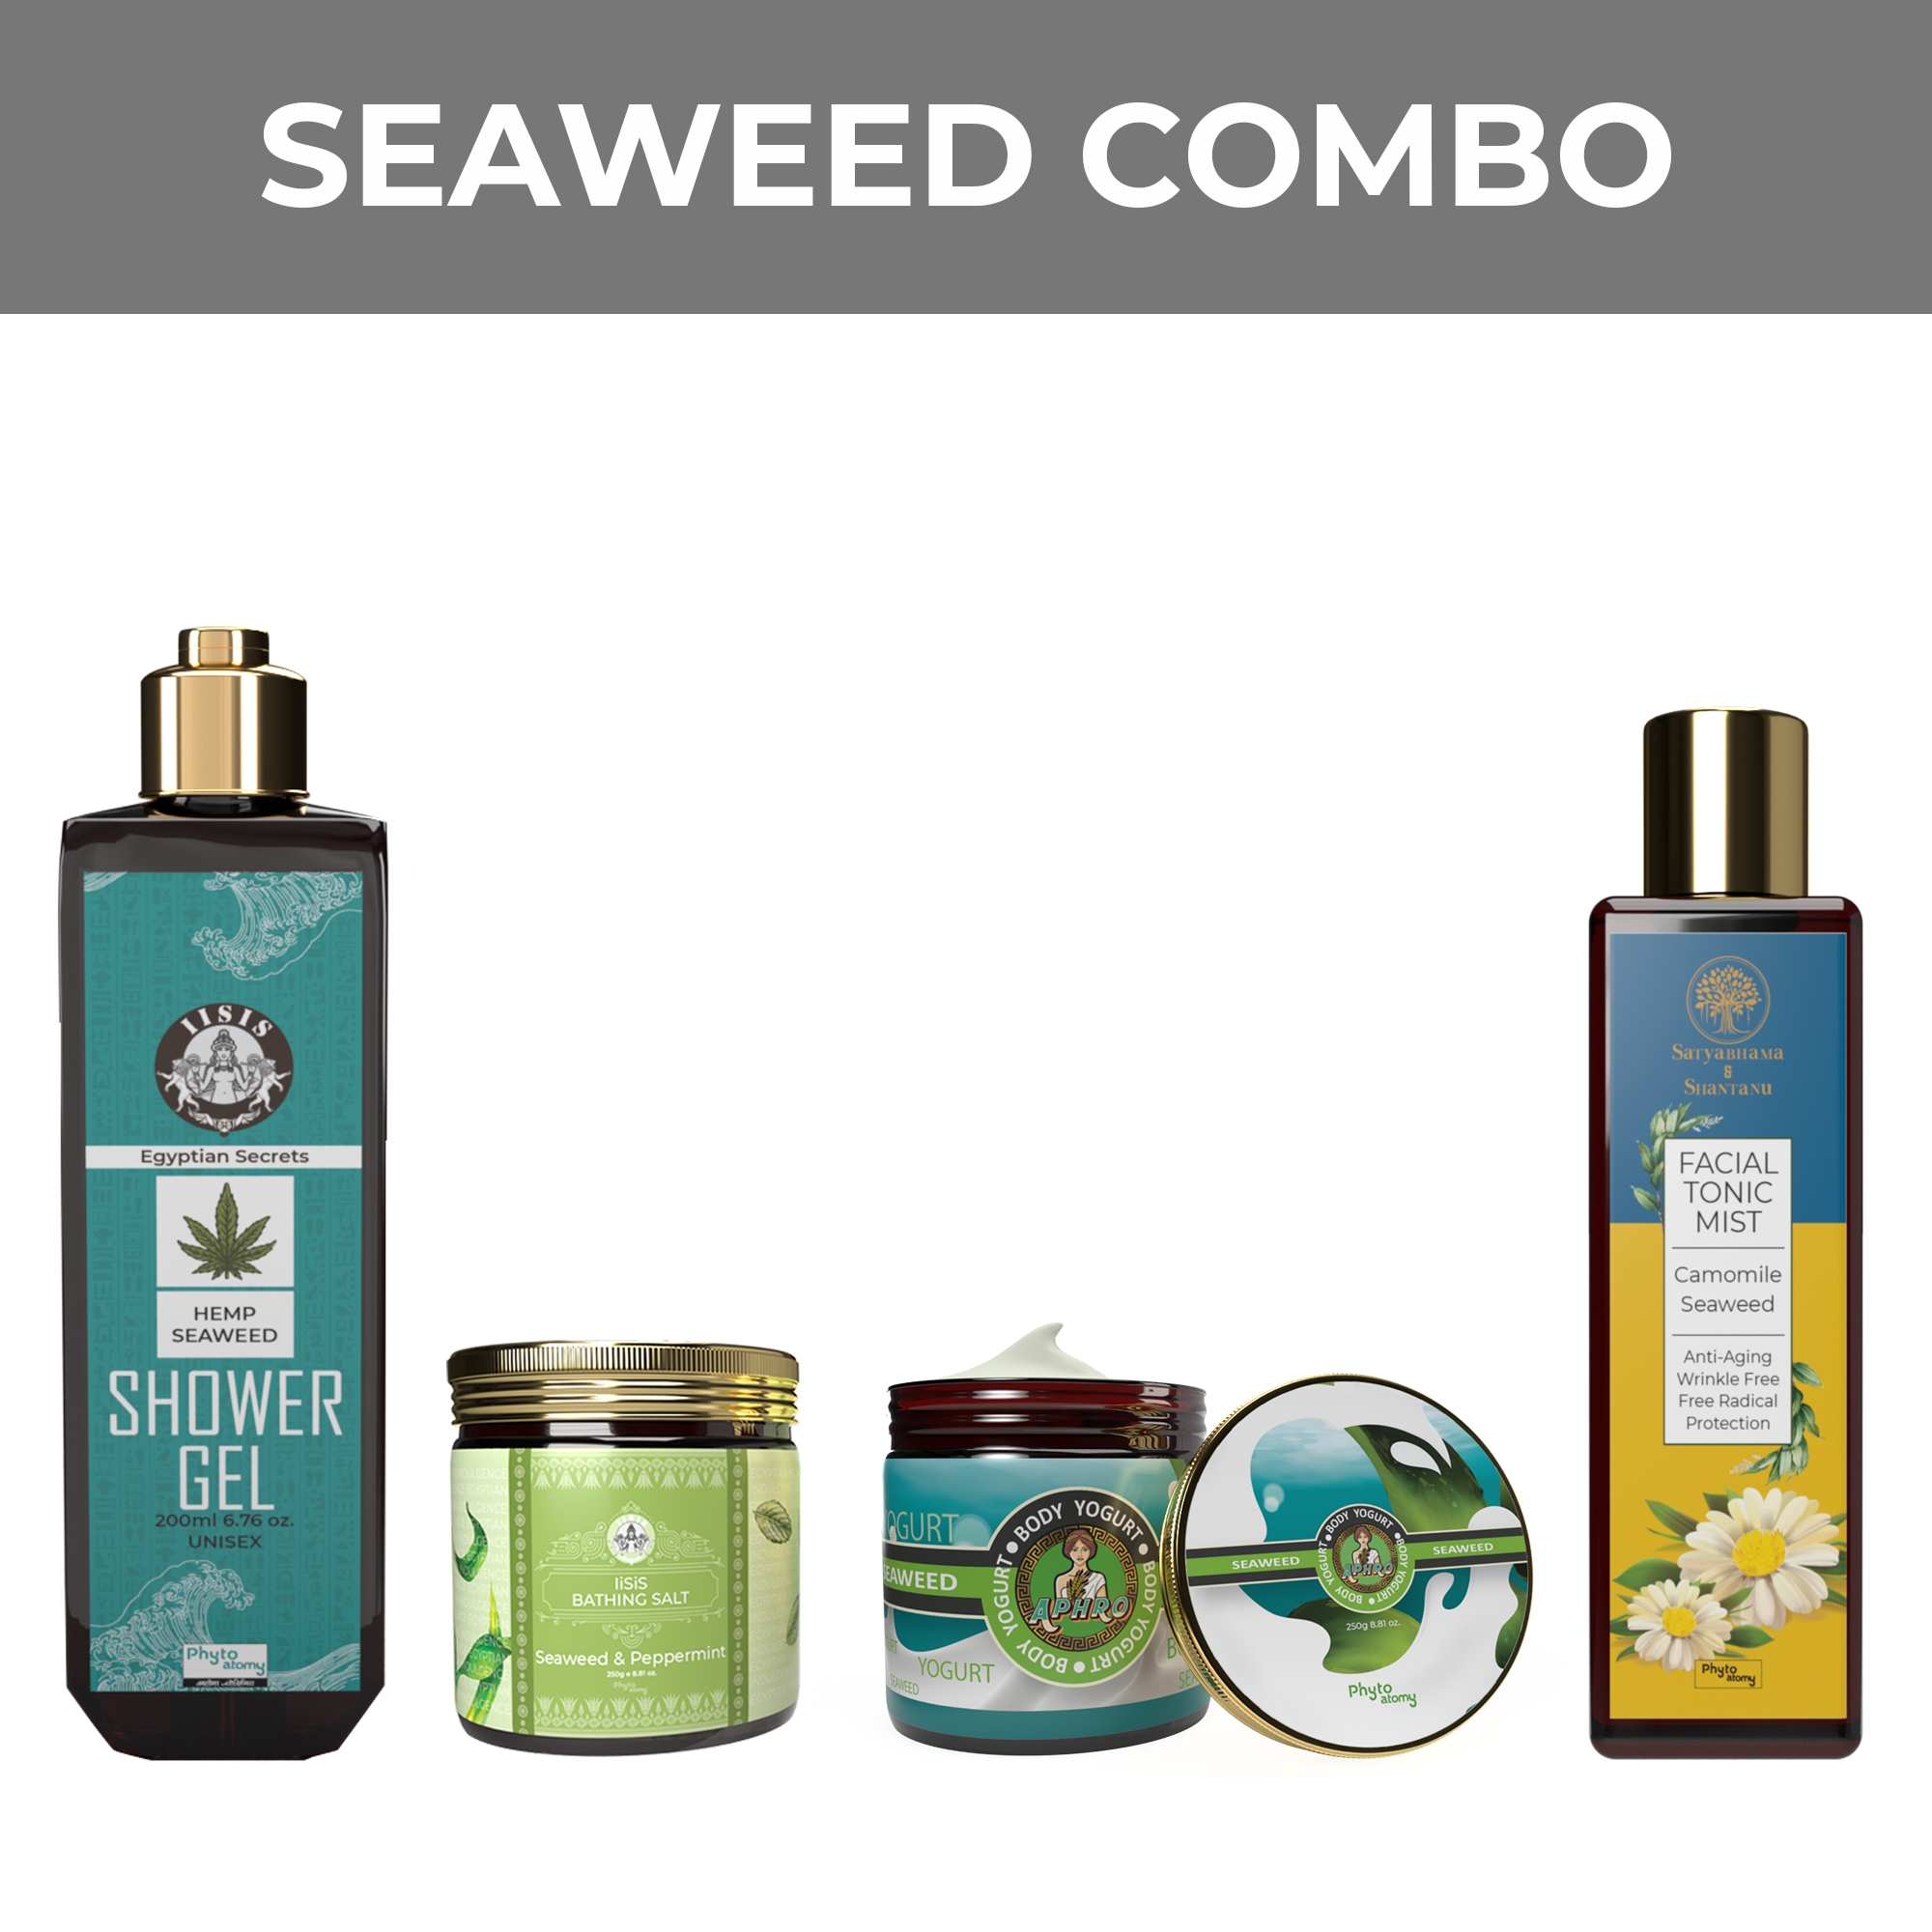 Seaweed Combo